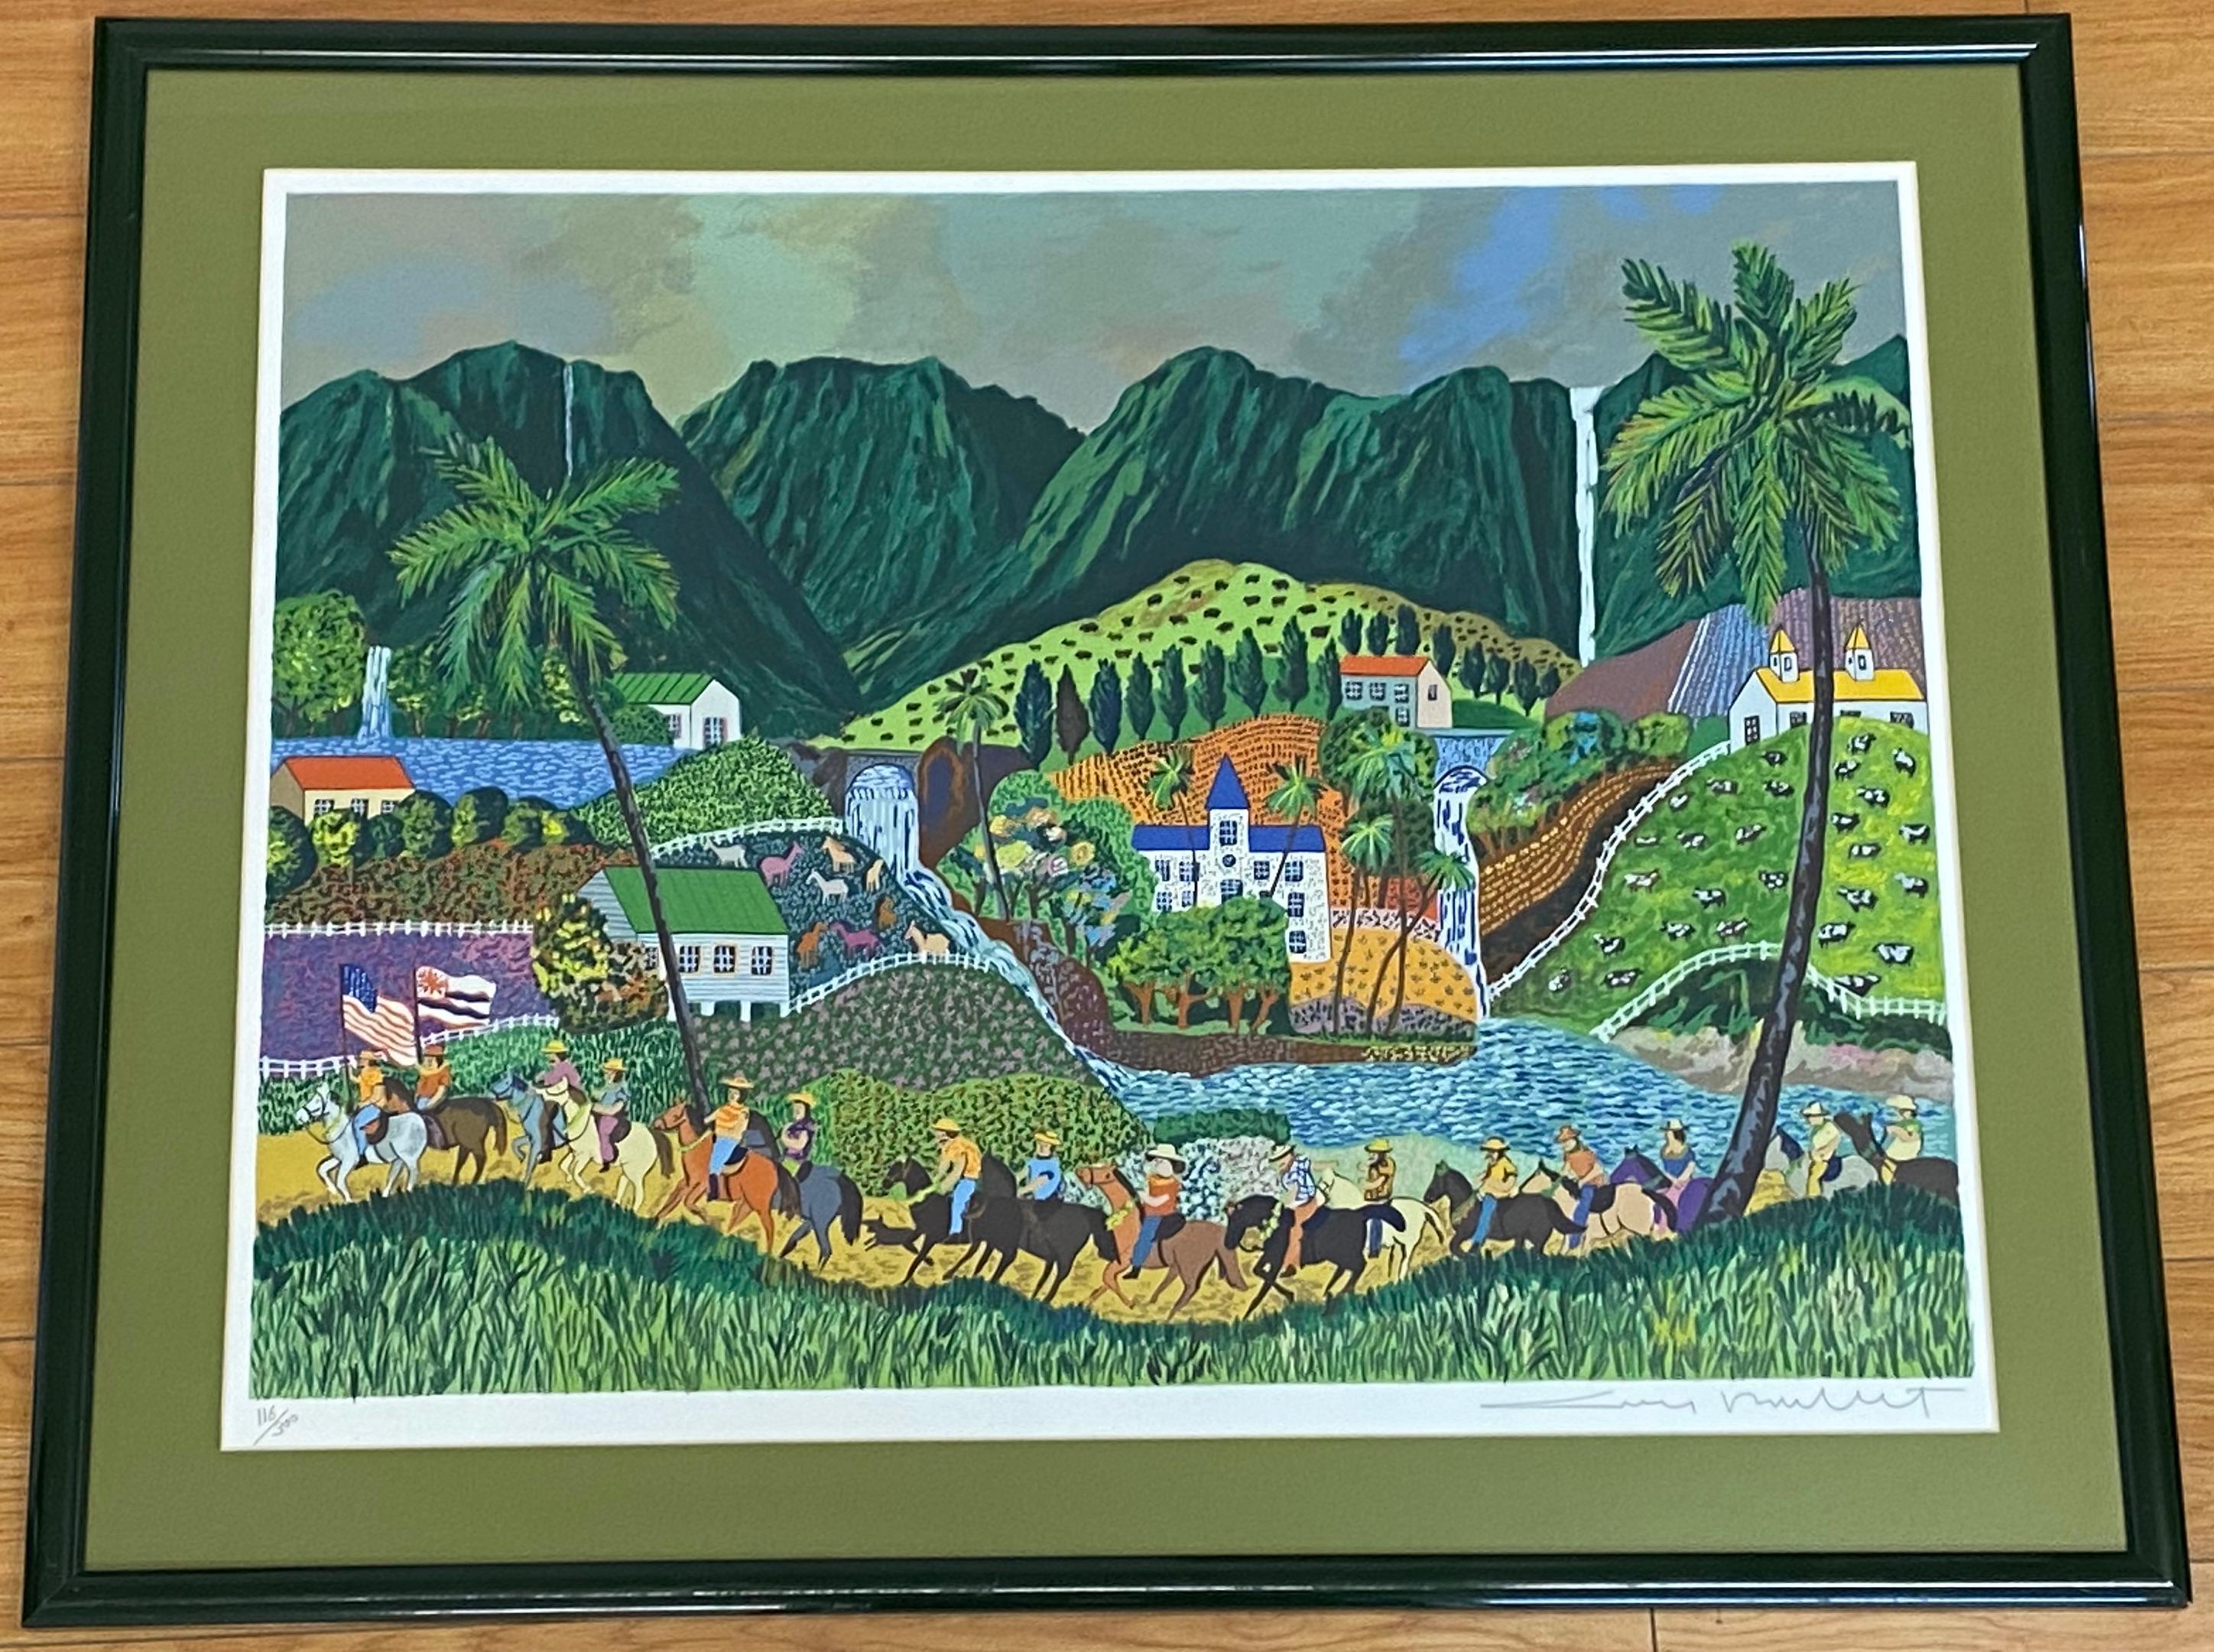 Guy Buffet, lithographie hawaïenne en édition limitée, années 1990

Lithographie lumineuse, colorée et fantaisiste de l'artiste Guy Buffet.

Une procession de chevaux dans le paysage d'un village hawaïen

Dimensions 32" de large x 24" de haut

Le